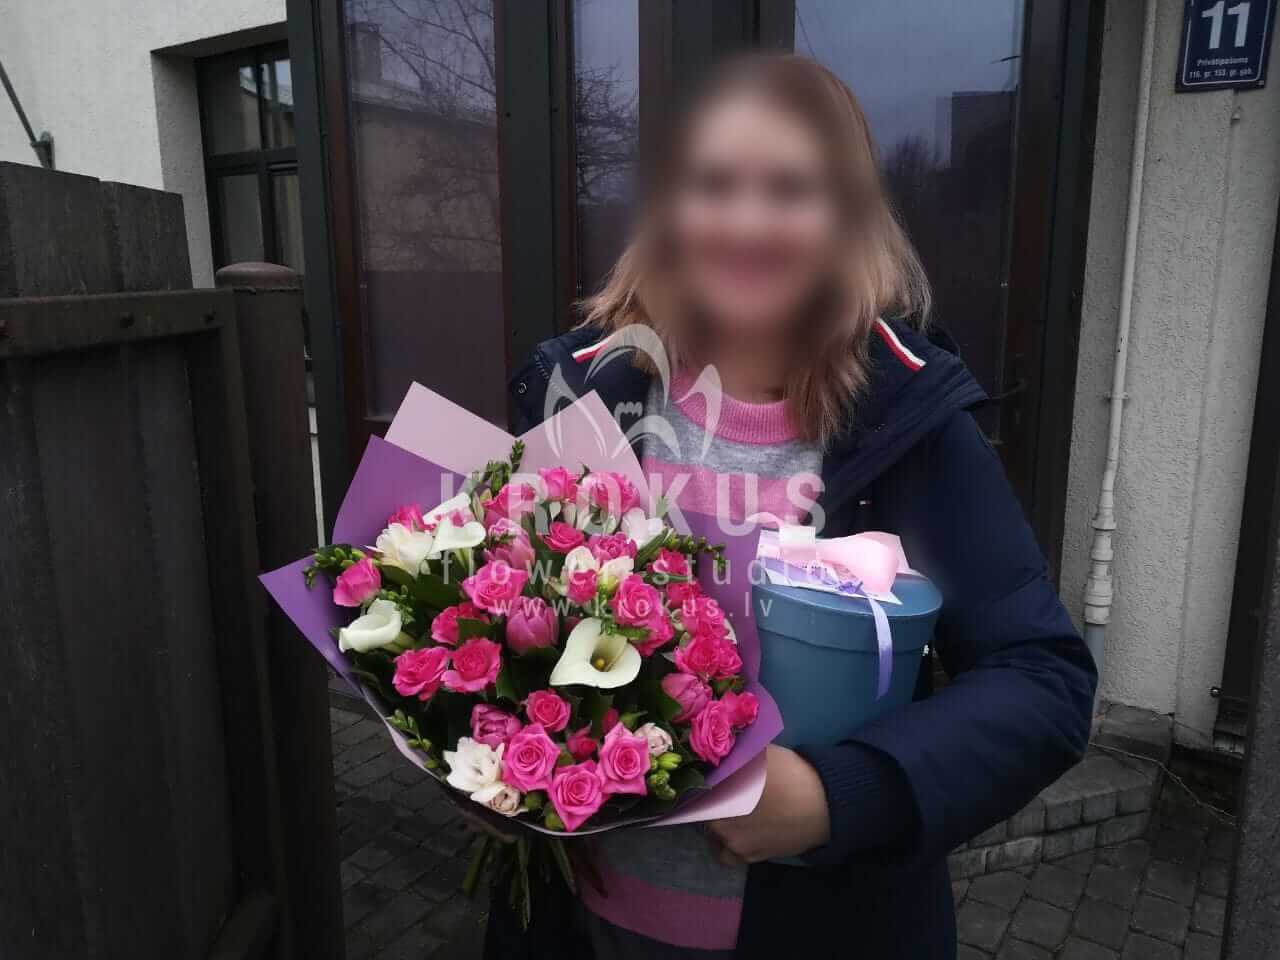 Доставка цветов в город Рига (коробкакустовые розыкаллыфрезиибувардиясалал)